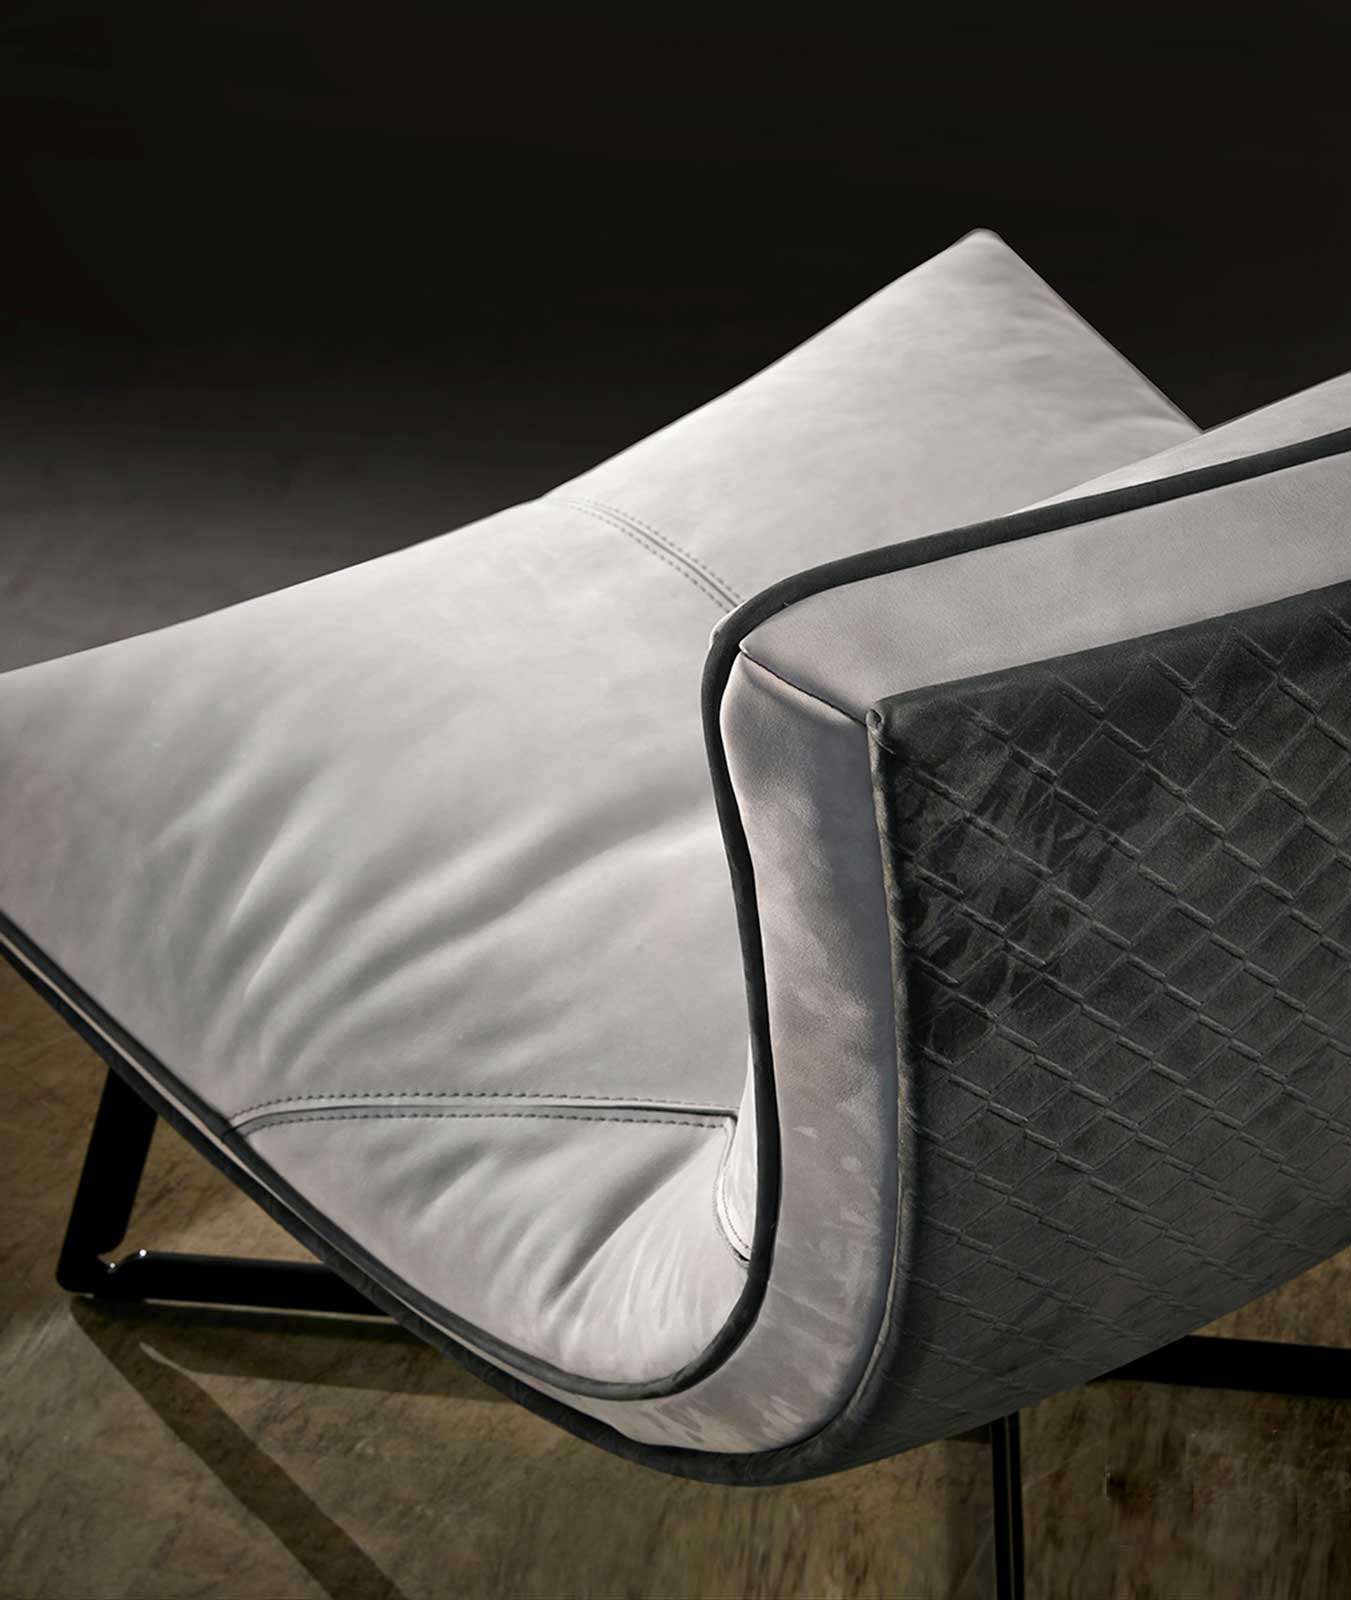 Chaise longue en cuir crème made in italy. Vente en ligne de meubles et fauteuils relax design haut de gamme avec livraison gratuite.